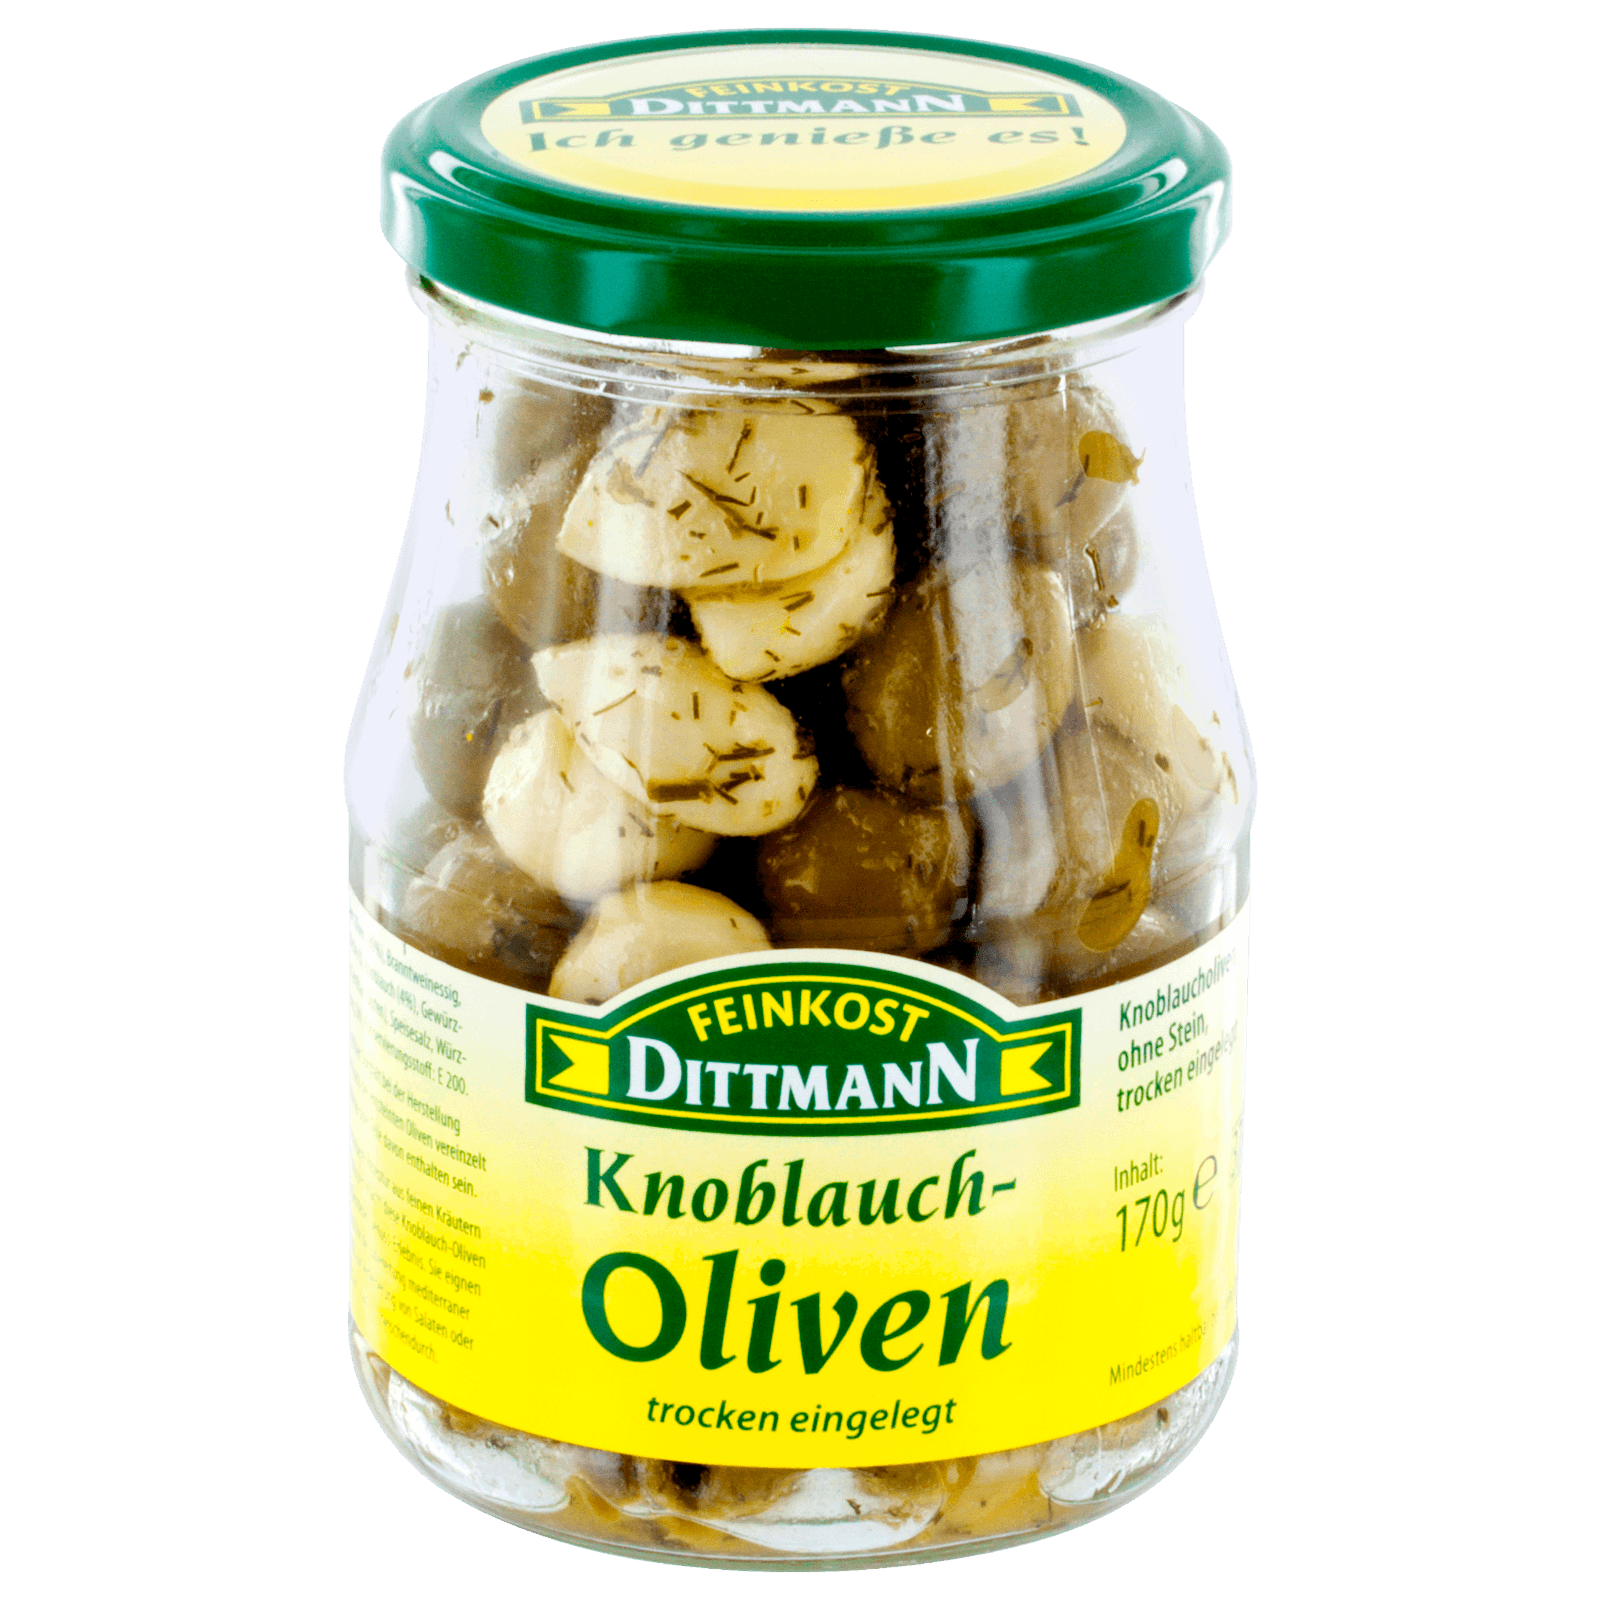 Feinkost Dittmann Knoblauch-Oliven trocken eingelegt 170g bei REWE ...